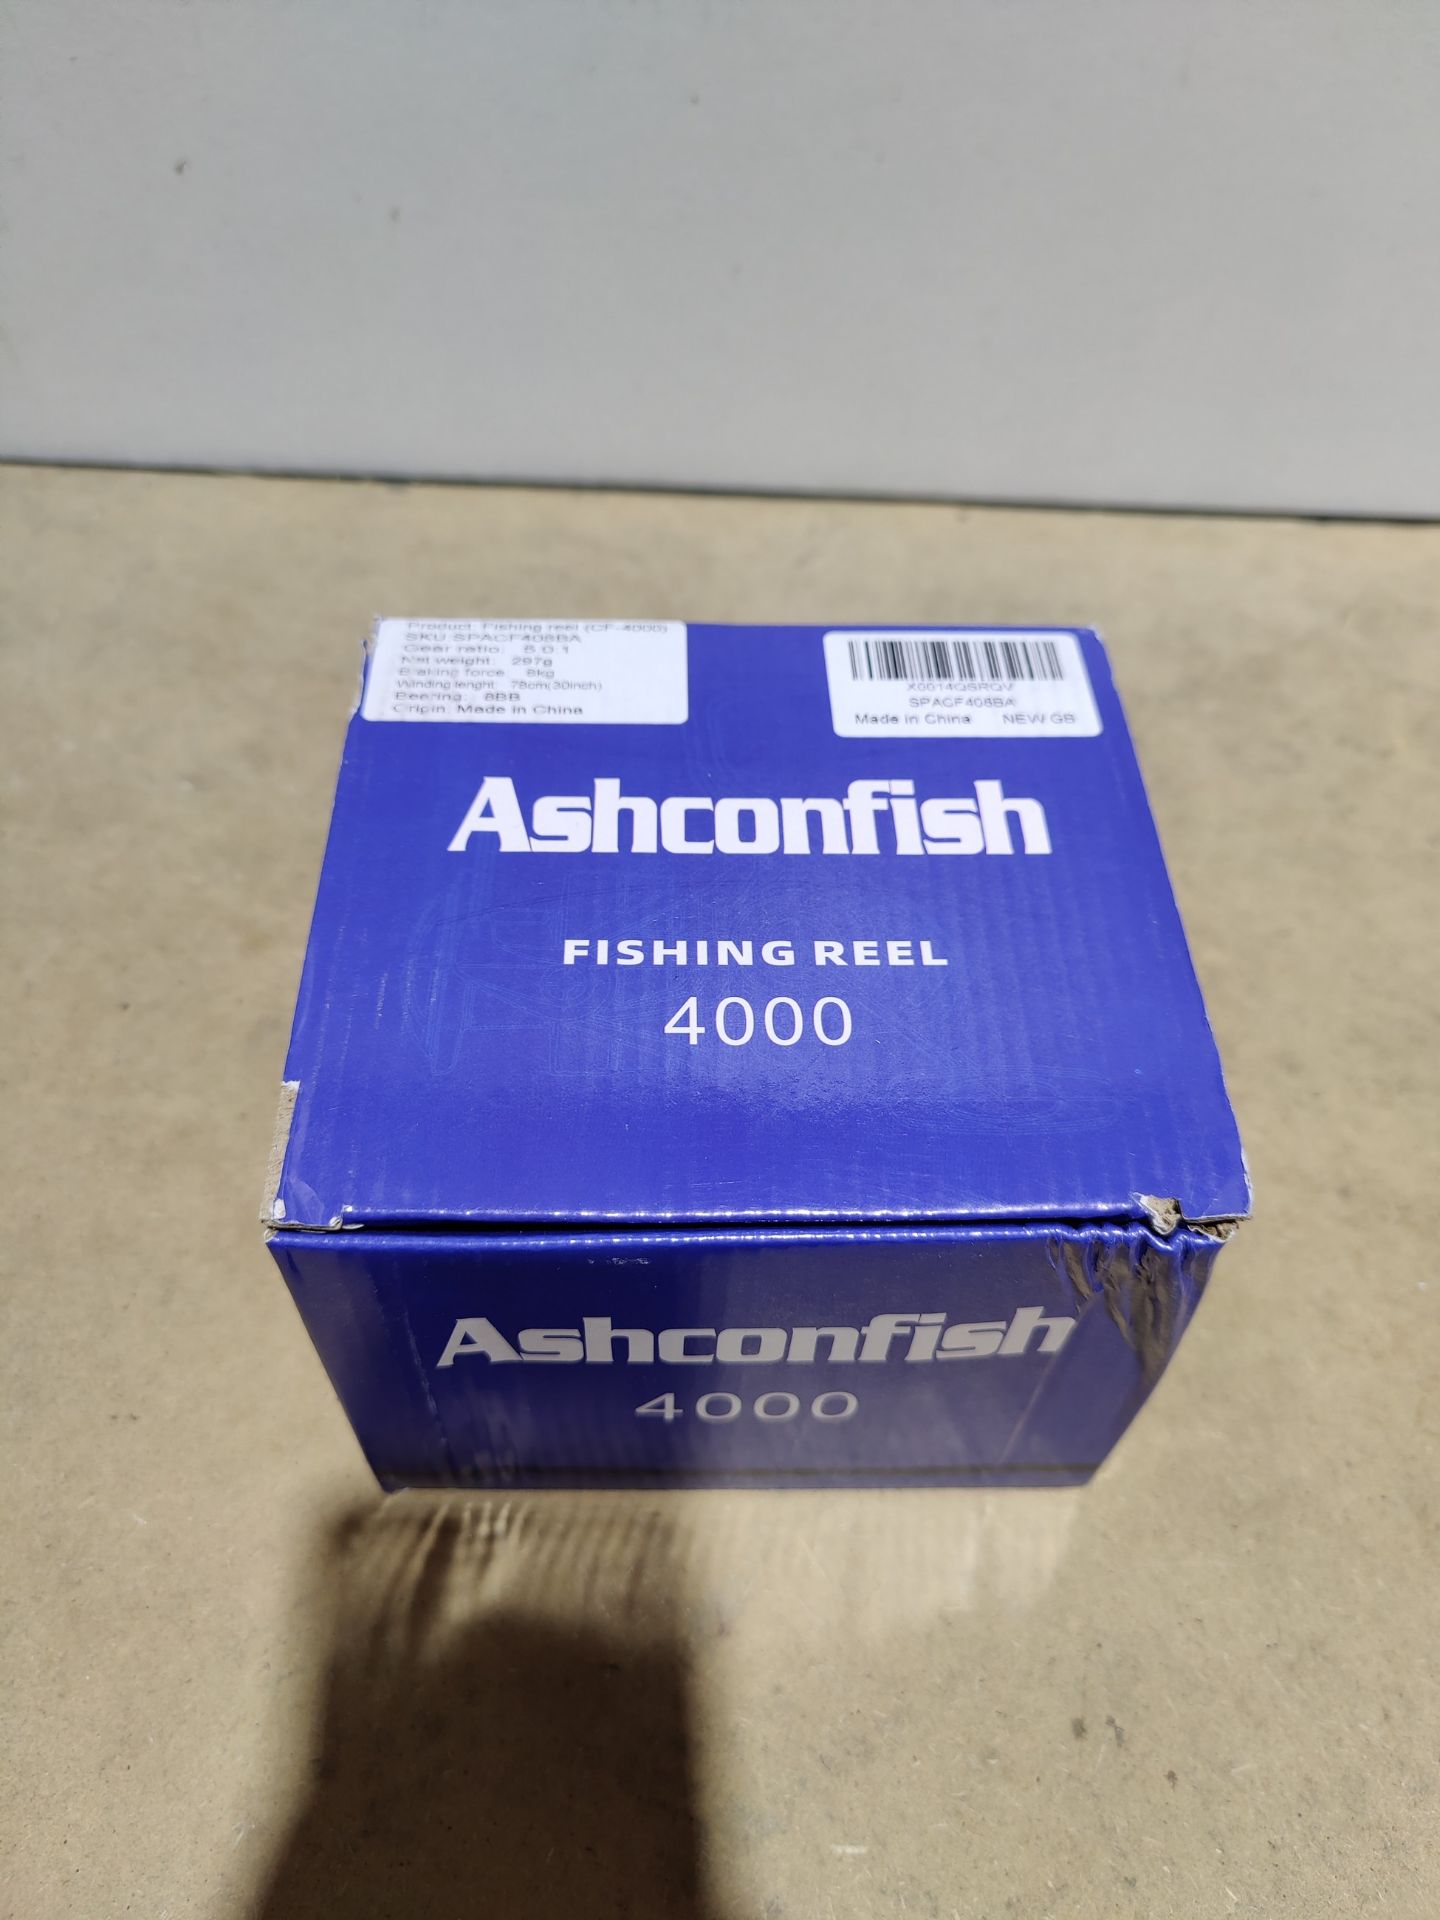 RRP £35.30 Ashconfish Fishing Reel - Image 2 of 2